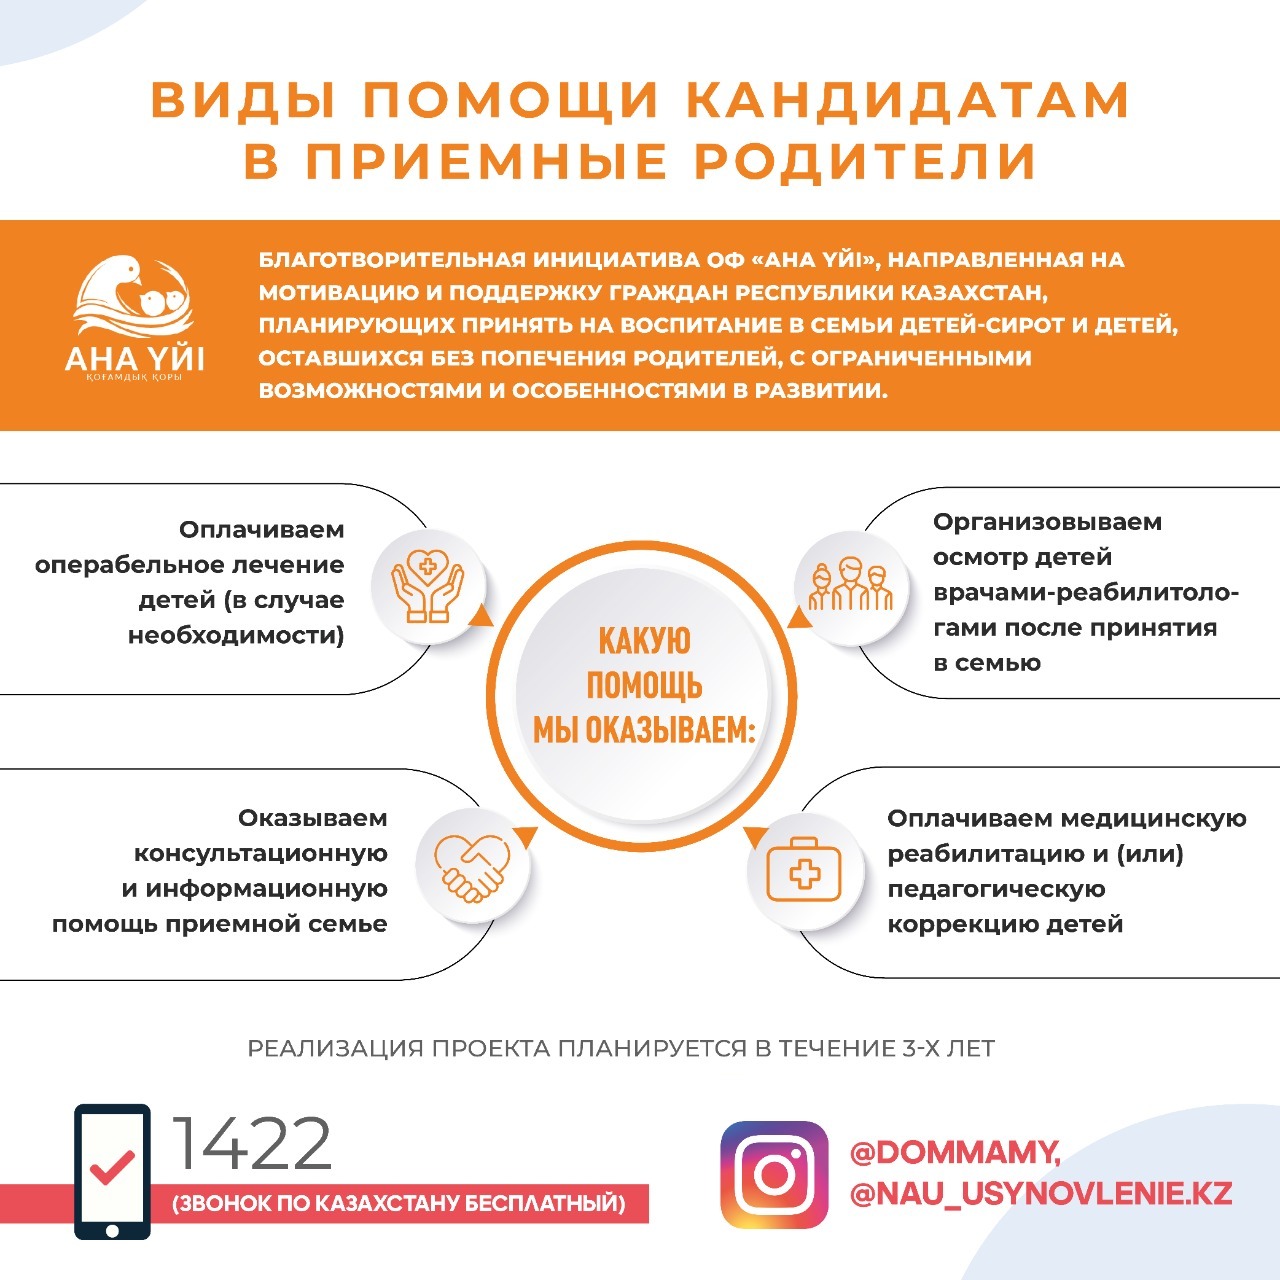 Благотворительная инициатива ОФ "АНА ҮЙІ", направленная на мотивацию и поддержку граждан Республики Казахстан, планирующих принять на воспитание в семьи детей-сирот и детей,оставшихся без попечения родителей, с ограниченными возможностями и особенностями в развитии